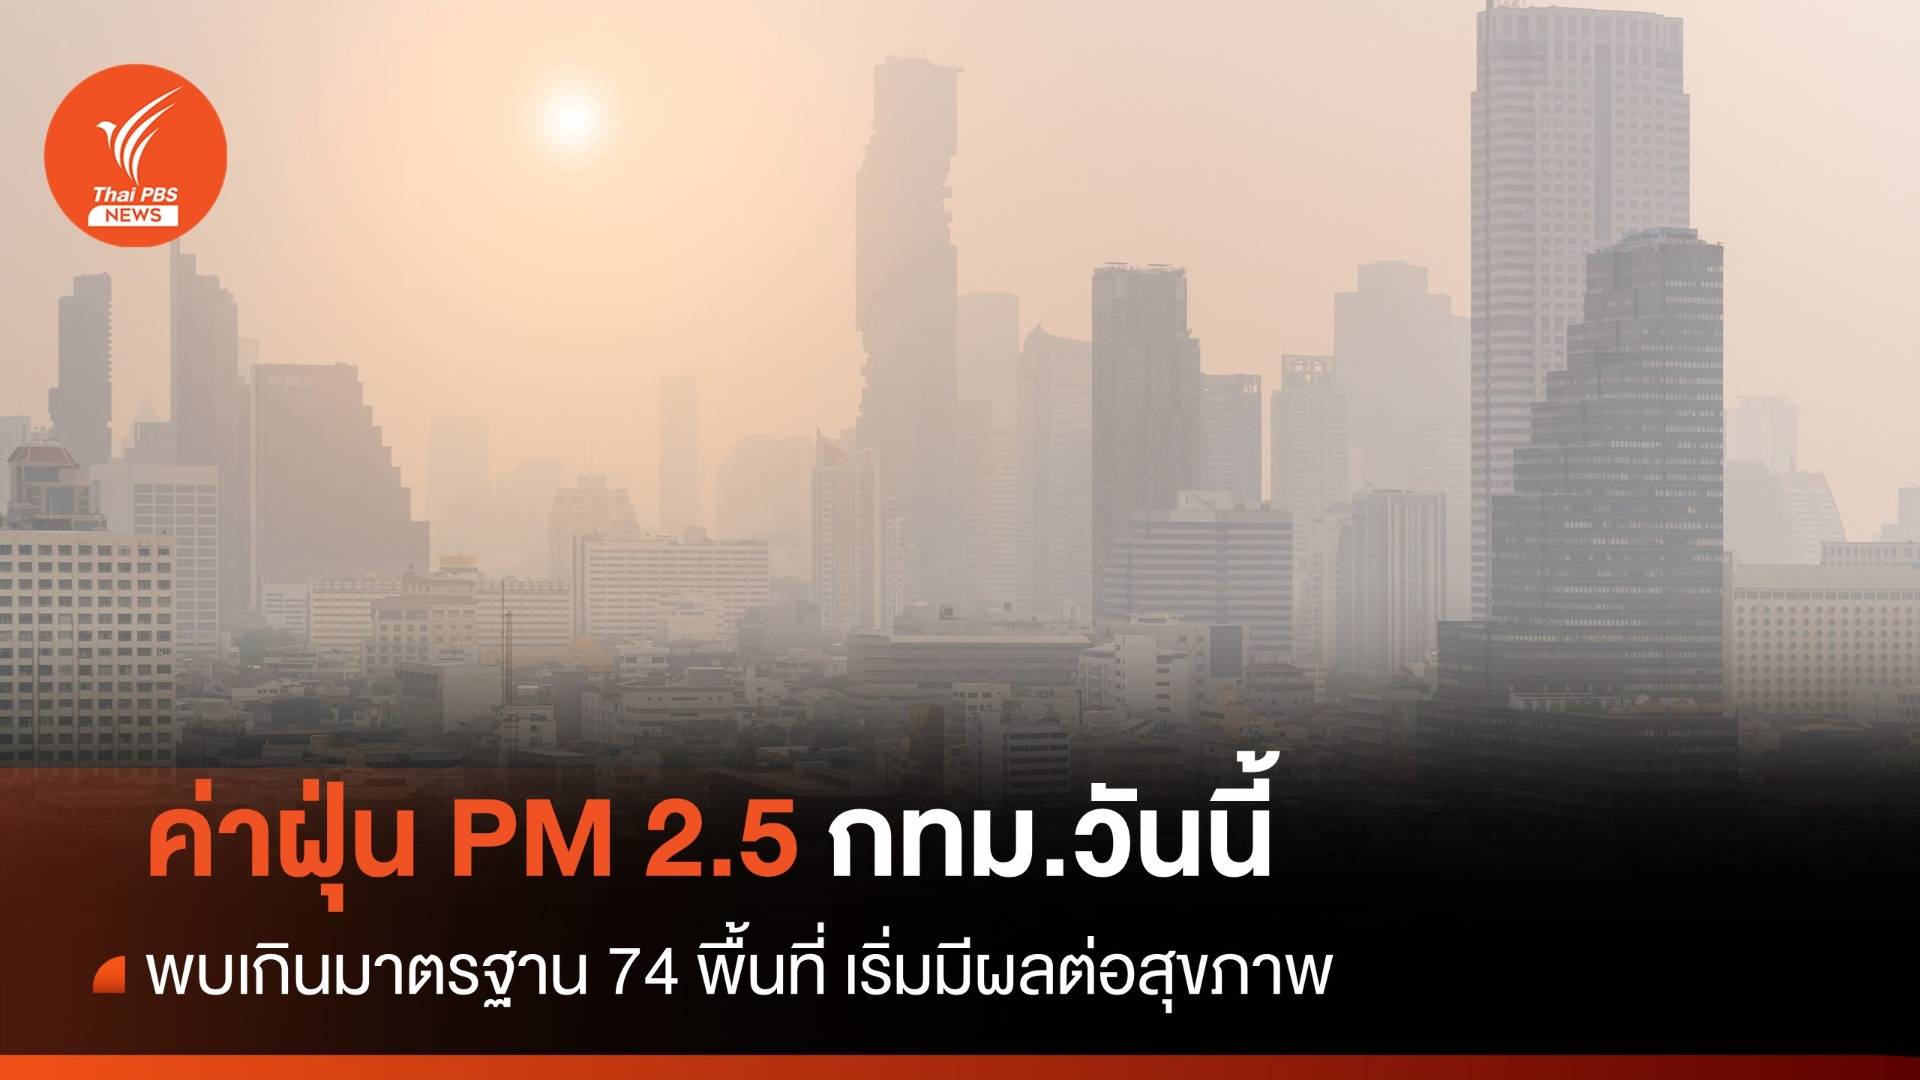 วันนี้ ฝุ่น PM 2.5 กทม.พบเกินมาตรฐาน 66 พื้นที่ เริ่มมีผลต่อสุขภาพ